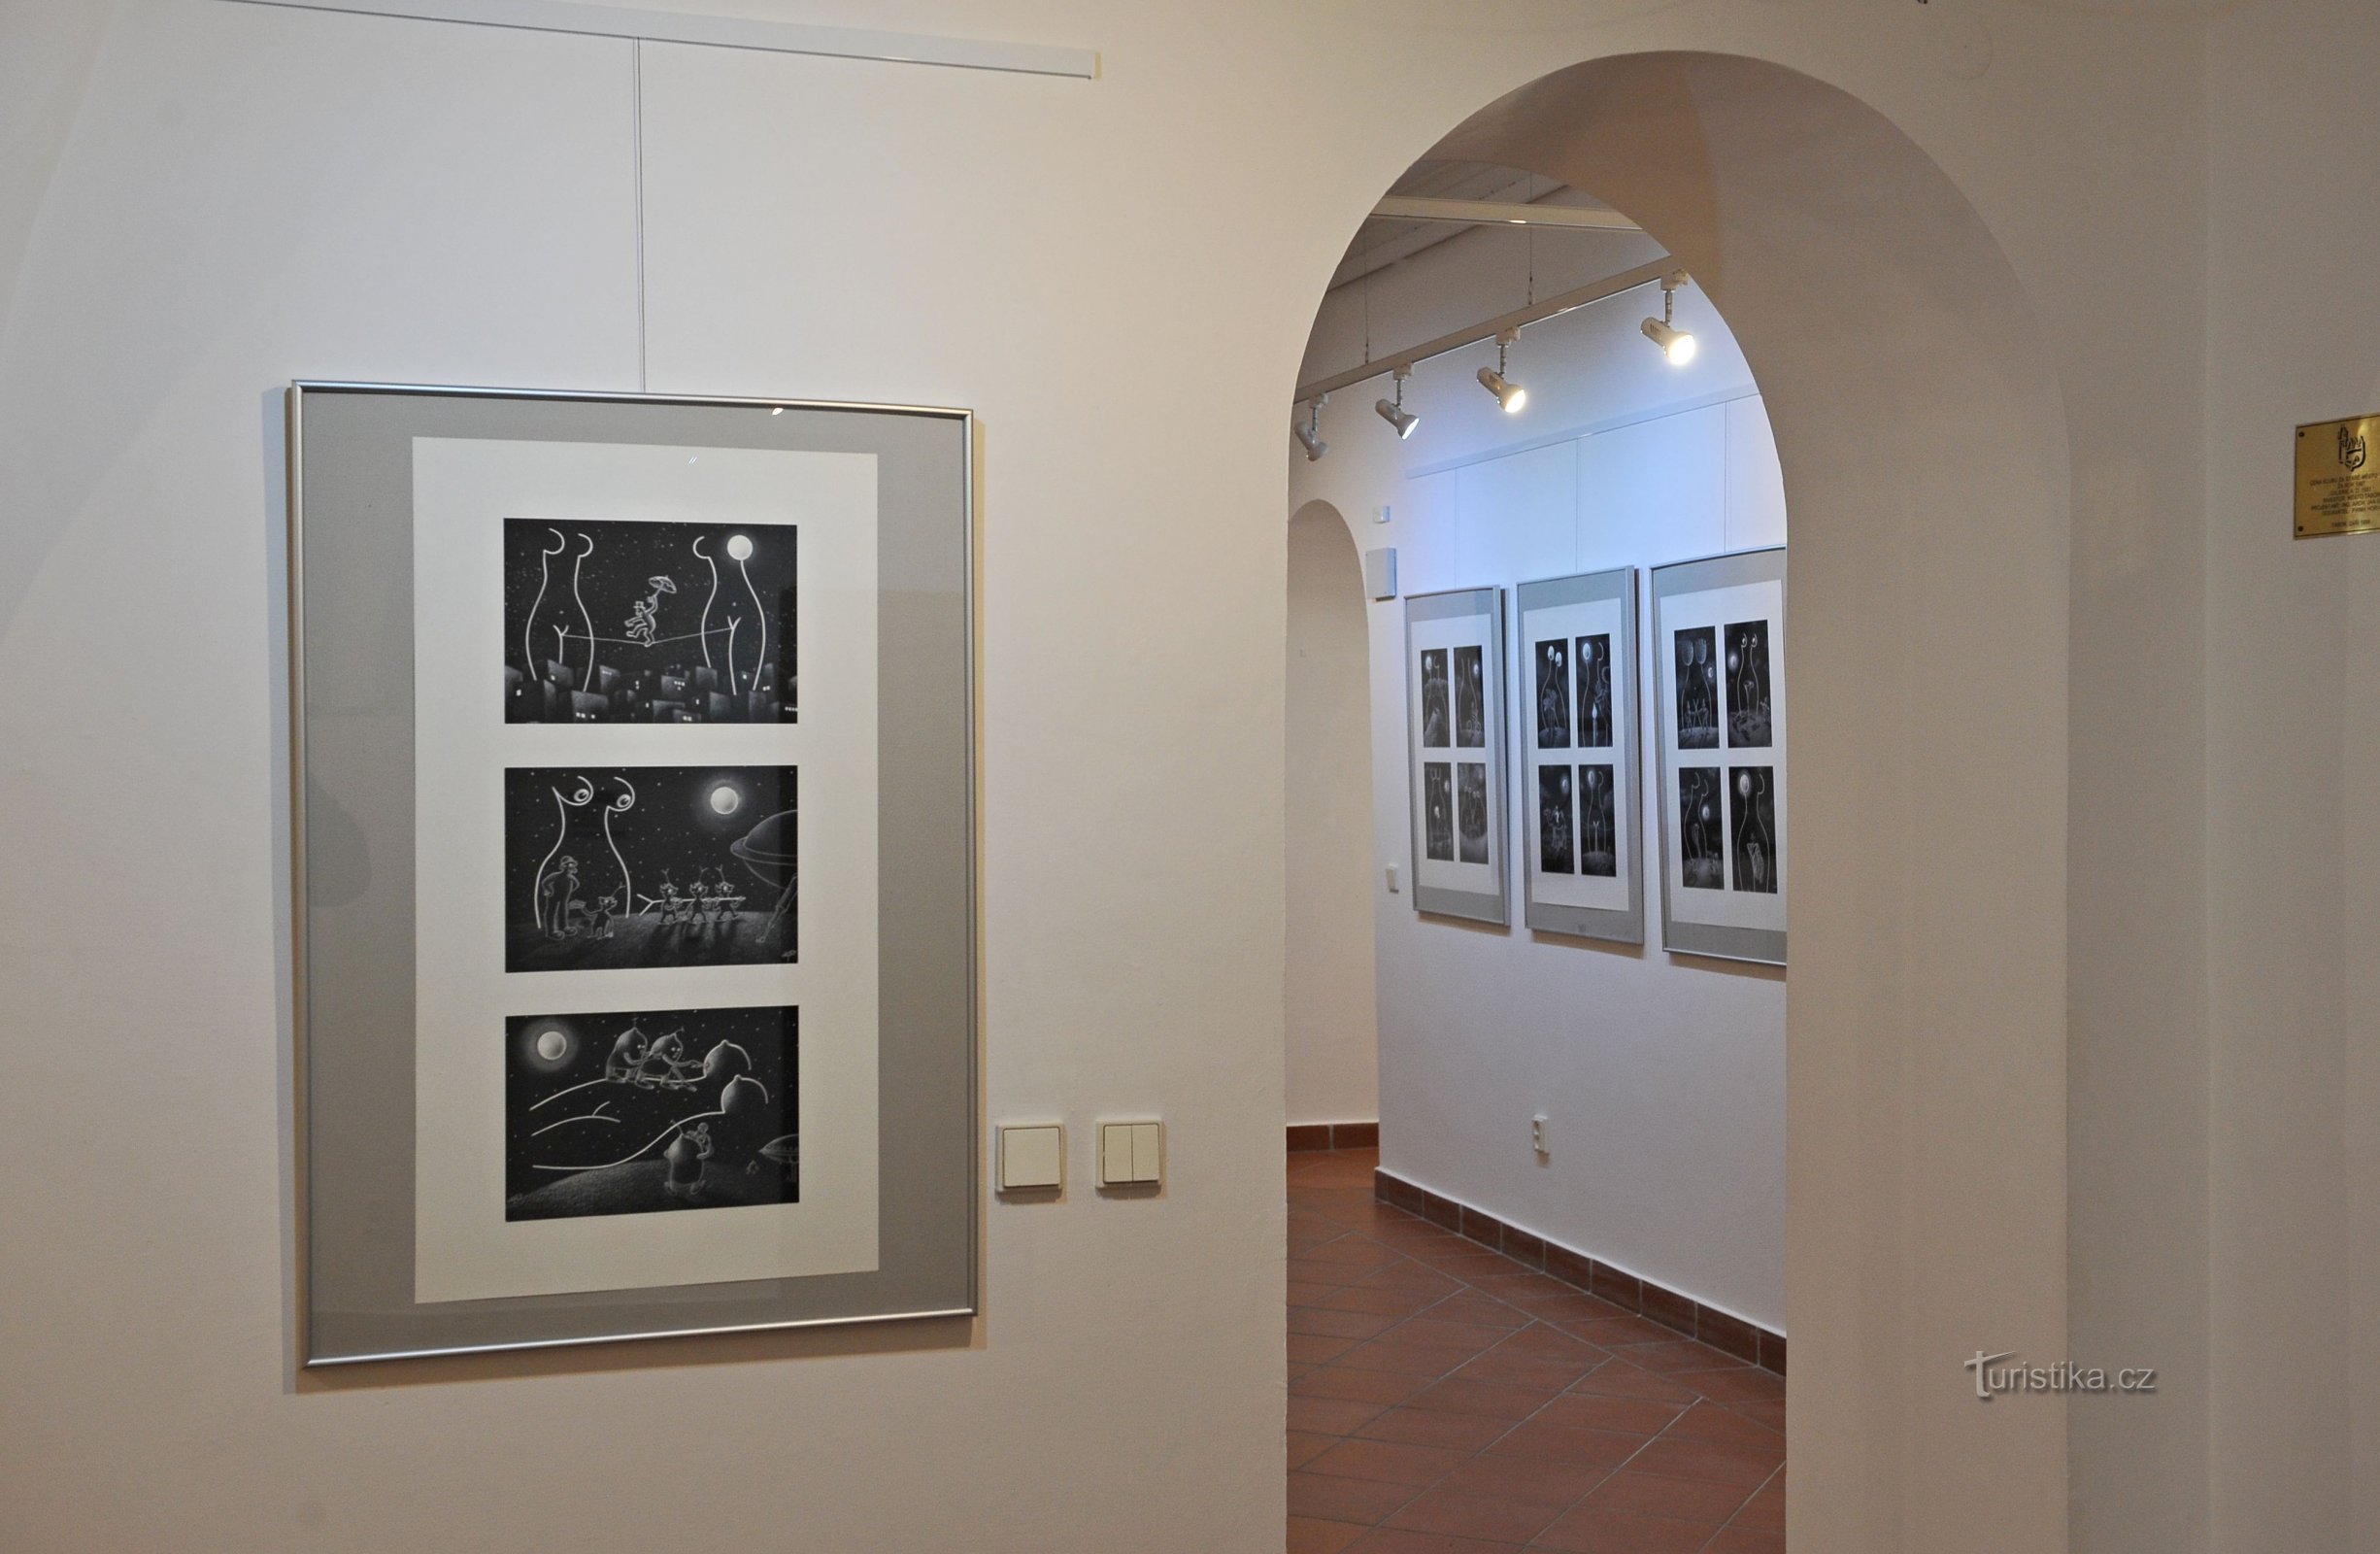 Gallery U Radnice